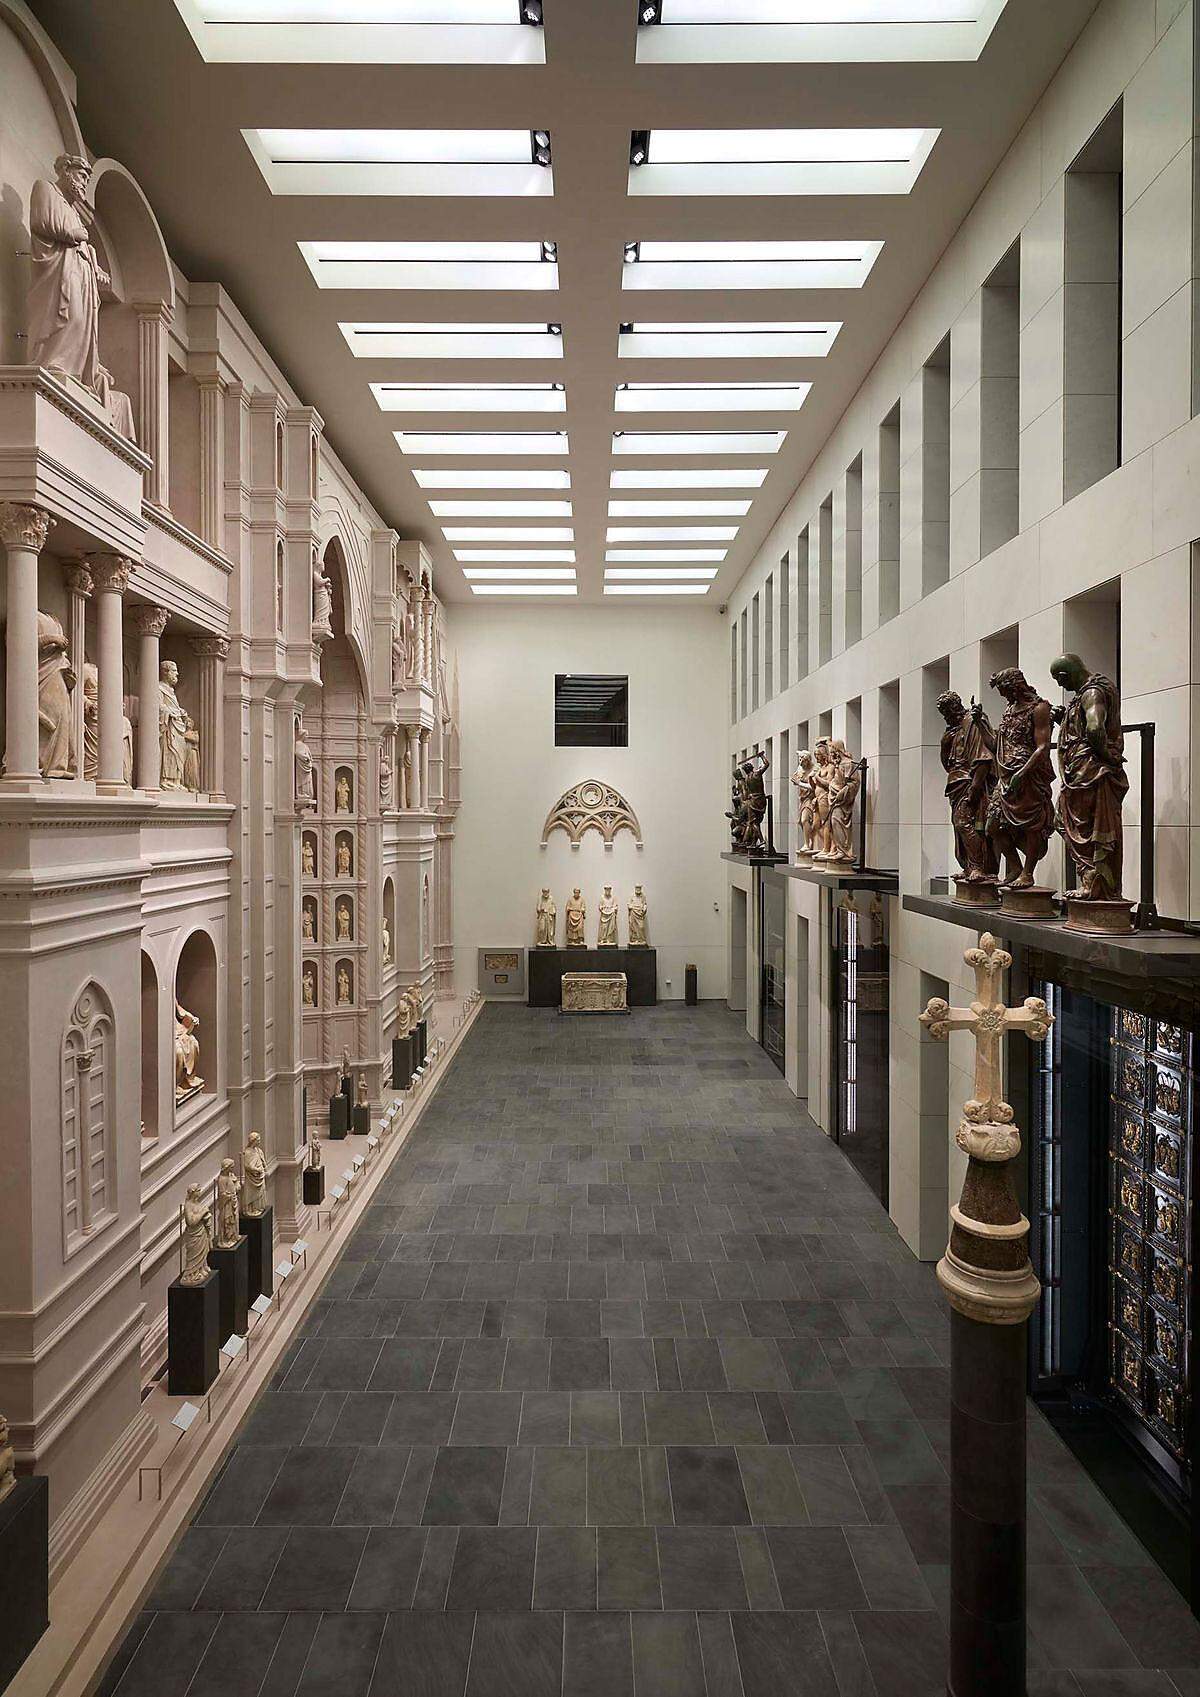 Die neue "Paradise Hall" beherbergt ein großes Modell der ursprünglichen Domfassade, die 1587 zerstört wurde, die Skulpturen von Arnolfo di Cambio und davor das "Paradise Gate" von Ghiberti. Architektur: Guicciardini &amp; Magni Architetti